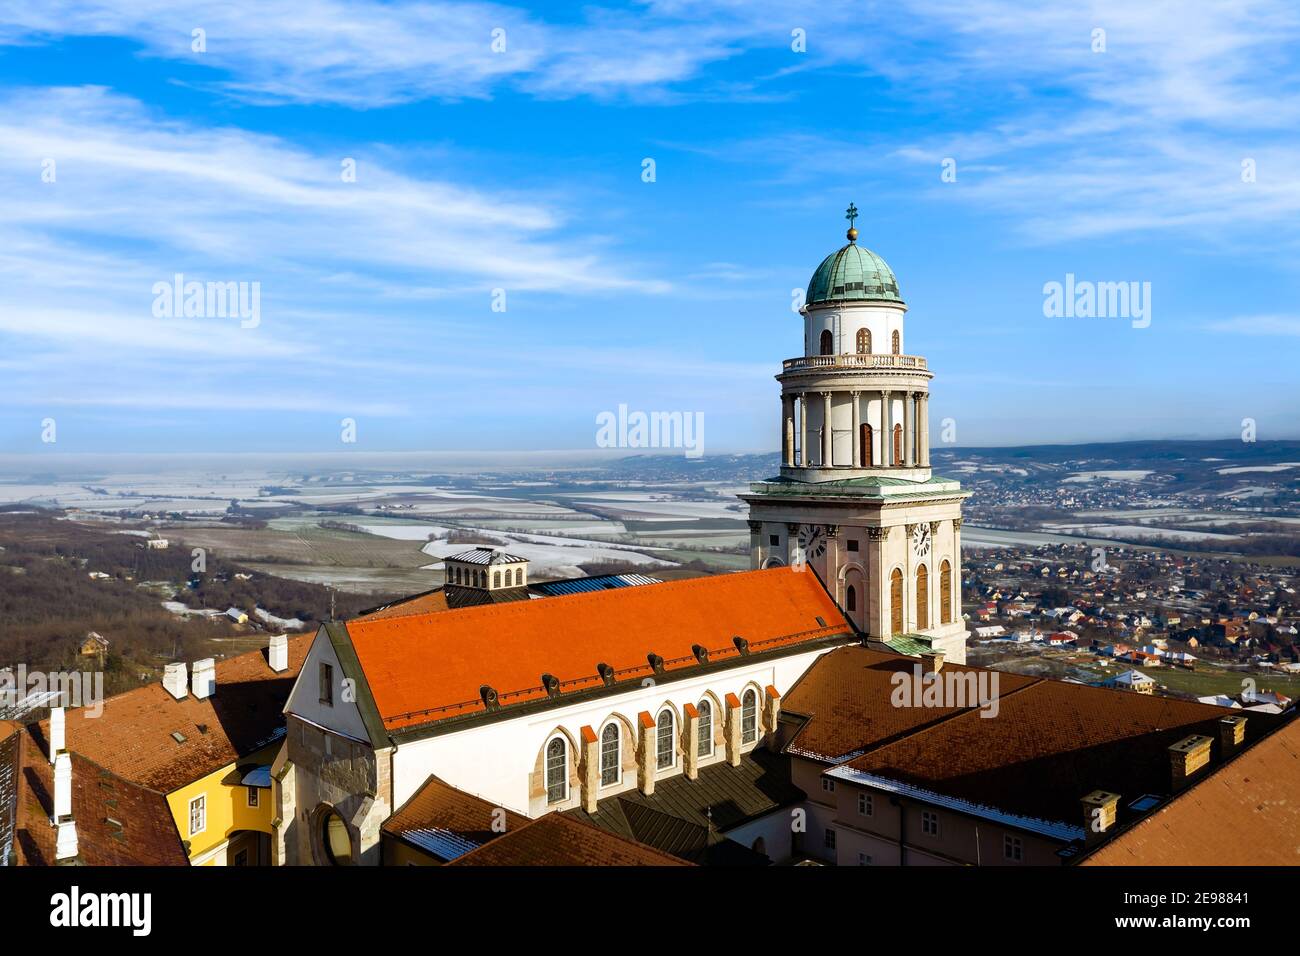 Foto arieal de la abadía benedictina de Pannonhalama en Hungría. Impresionante edificio histórico con una hermosa iglesia y biblioteca. Popular destino turístico Foto de stock